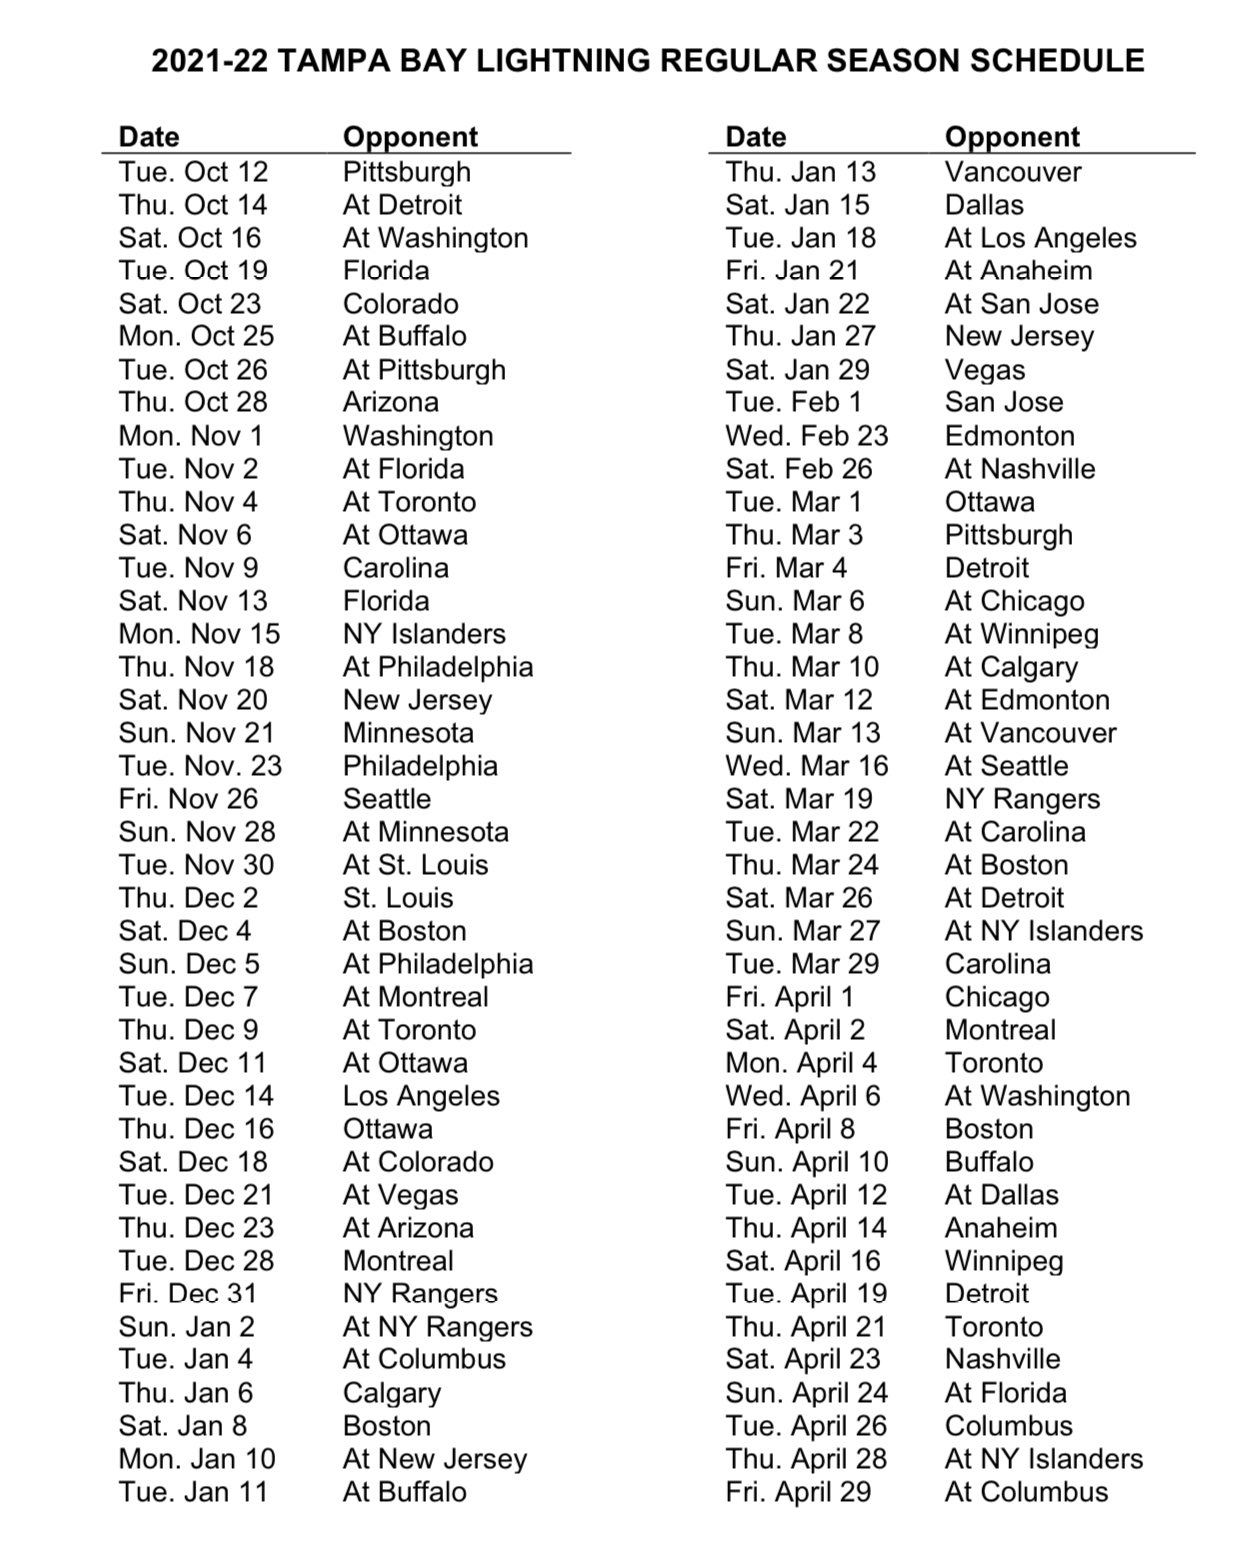 Tampa Bay Lightning release 2022-23 regular season schedule